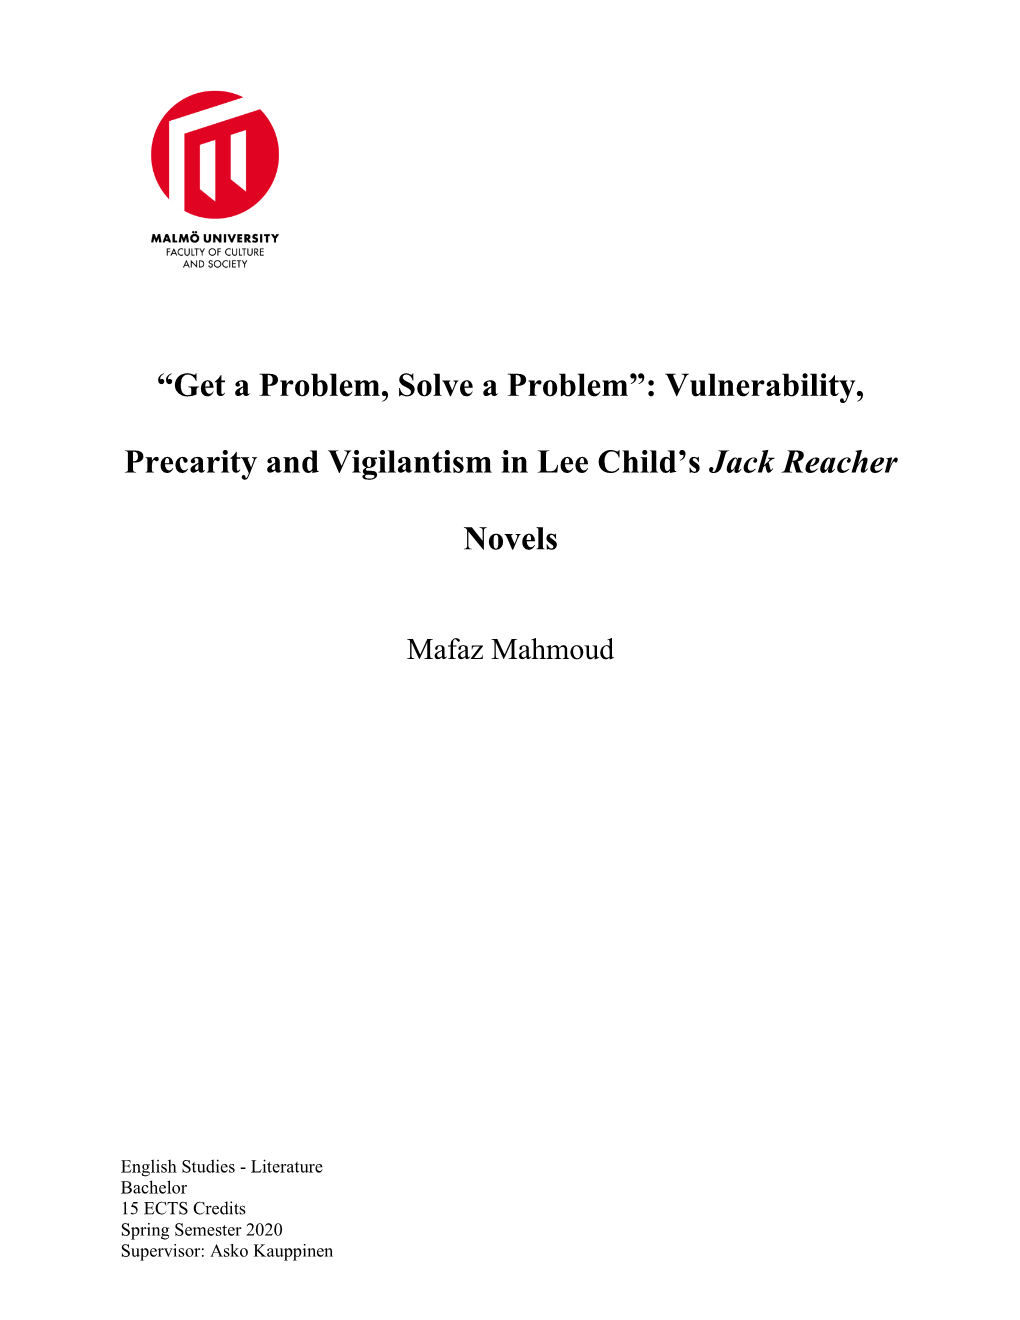 Vulnerability, Precarity and Vigilantism in Lee Child's